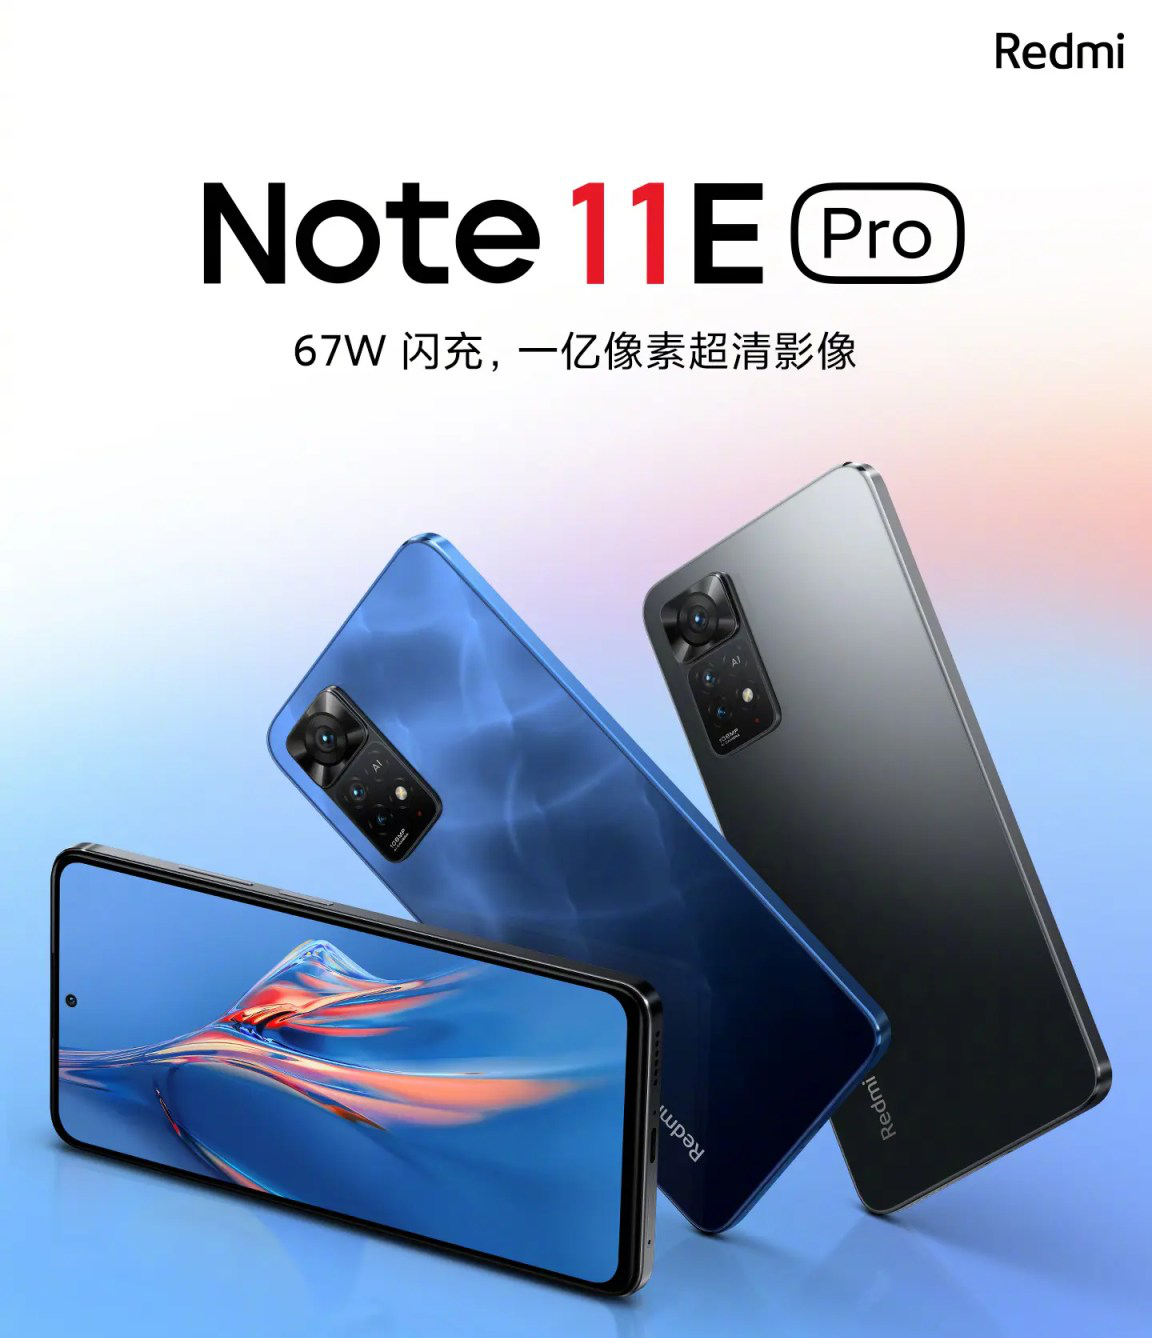 Xiaomi anuncia data de lançamento dos novos Redmi Note 10